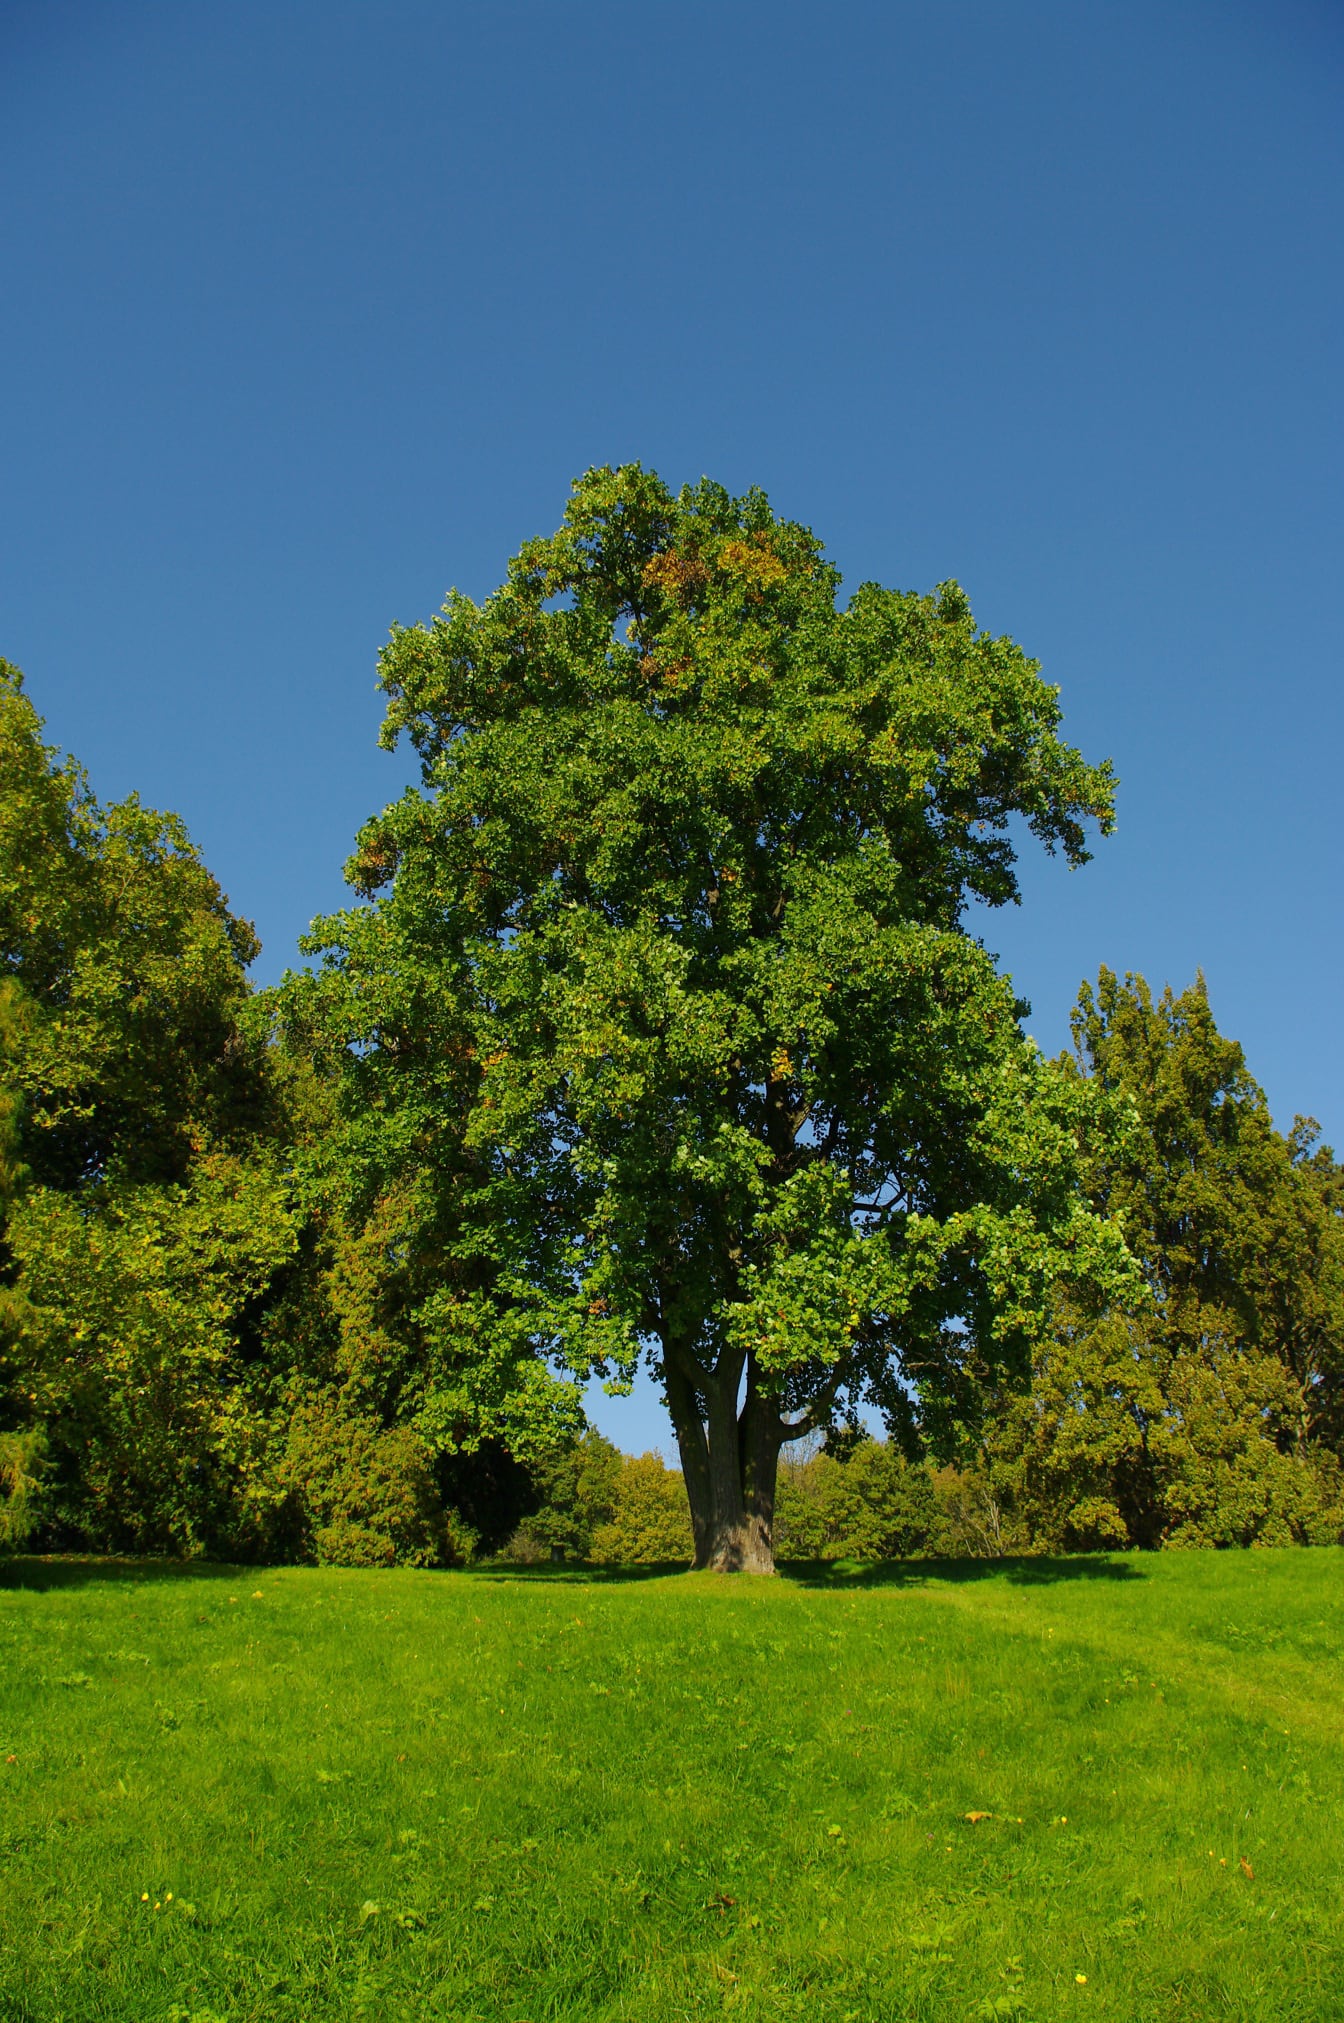 Stort træ med grønne grene og grønne blade på bakketop